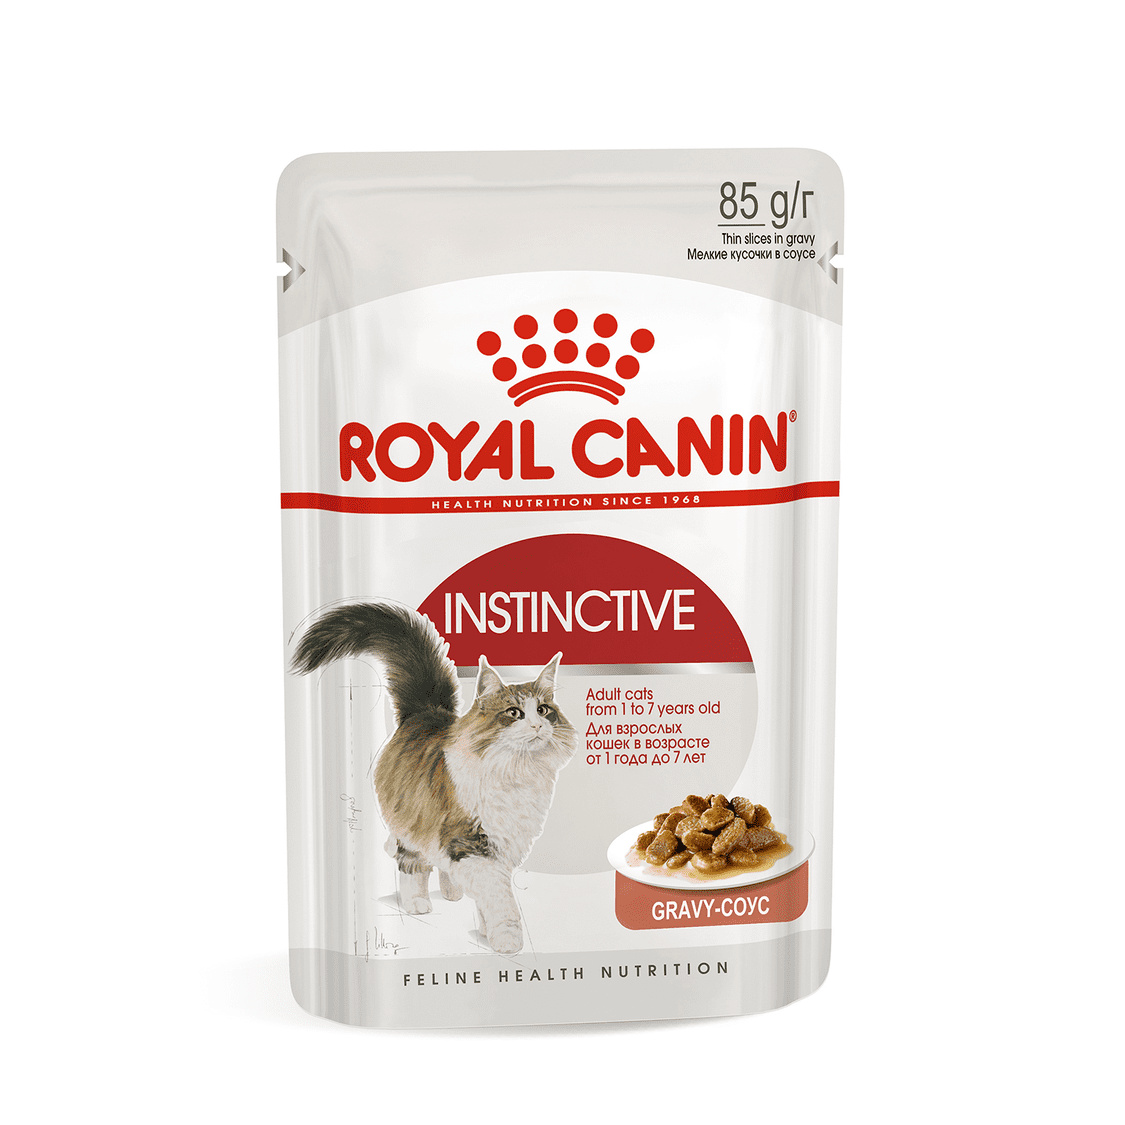 Royal Canin паучи Royal Canin паучи кусочки в соусе для кошек 1-7 лет (85 г) royal canin паучи royal canin паучи кусочки в желе для кастрированных кошек 1 7лет 1 шт